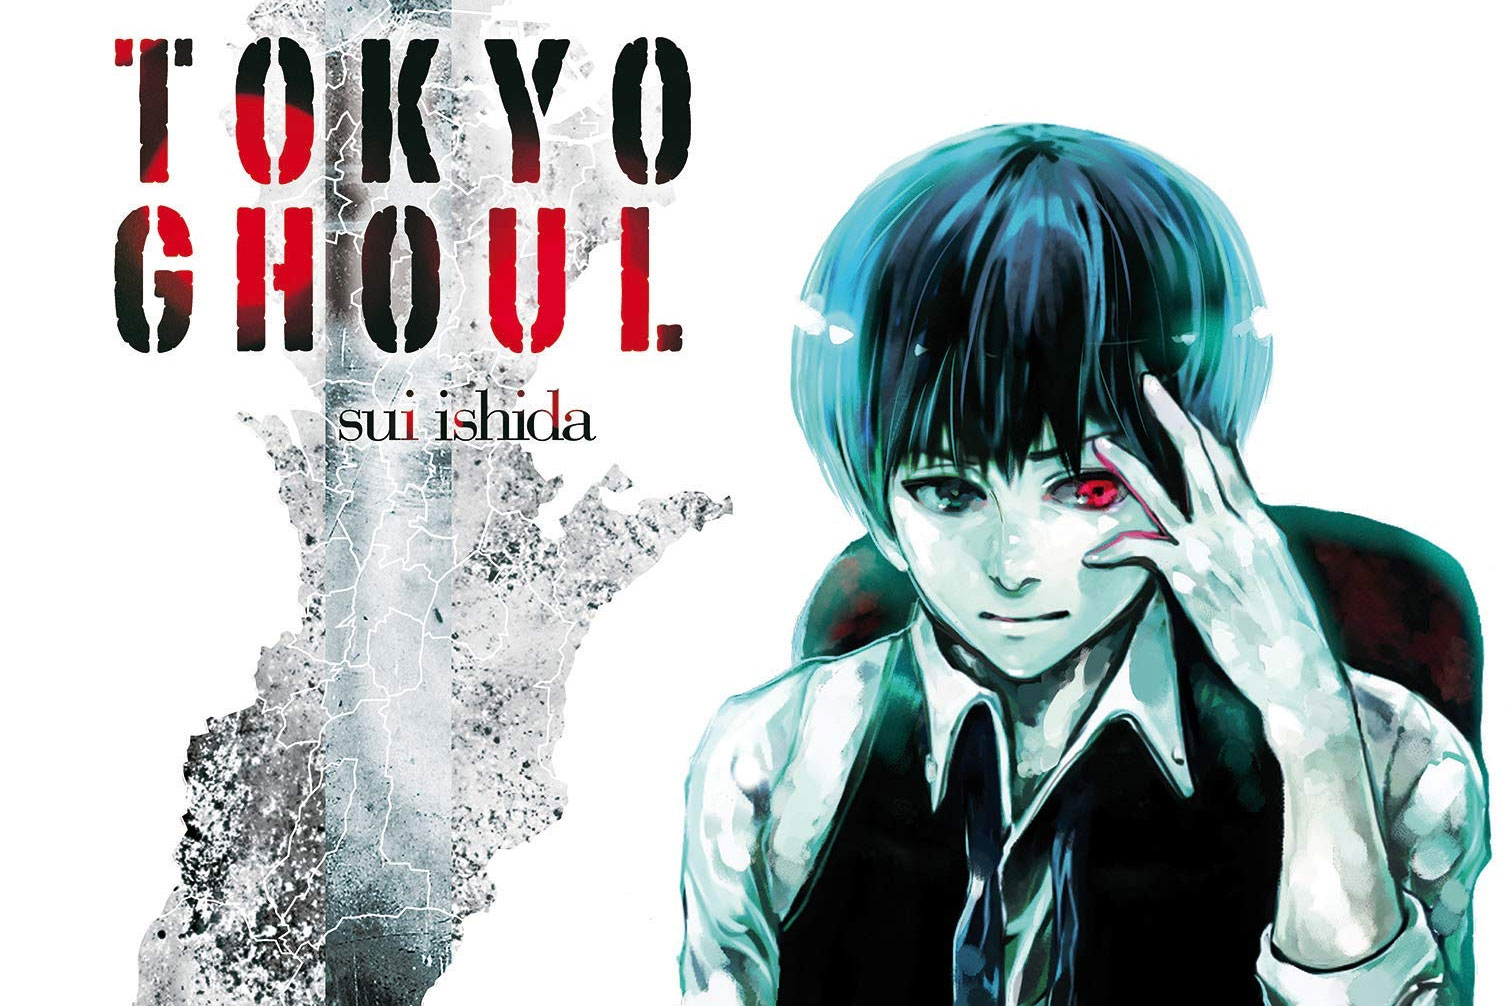 Tokyo Ghoul - Assistir Animes Online HD